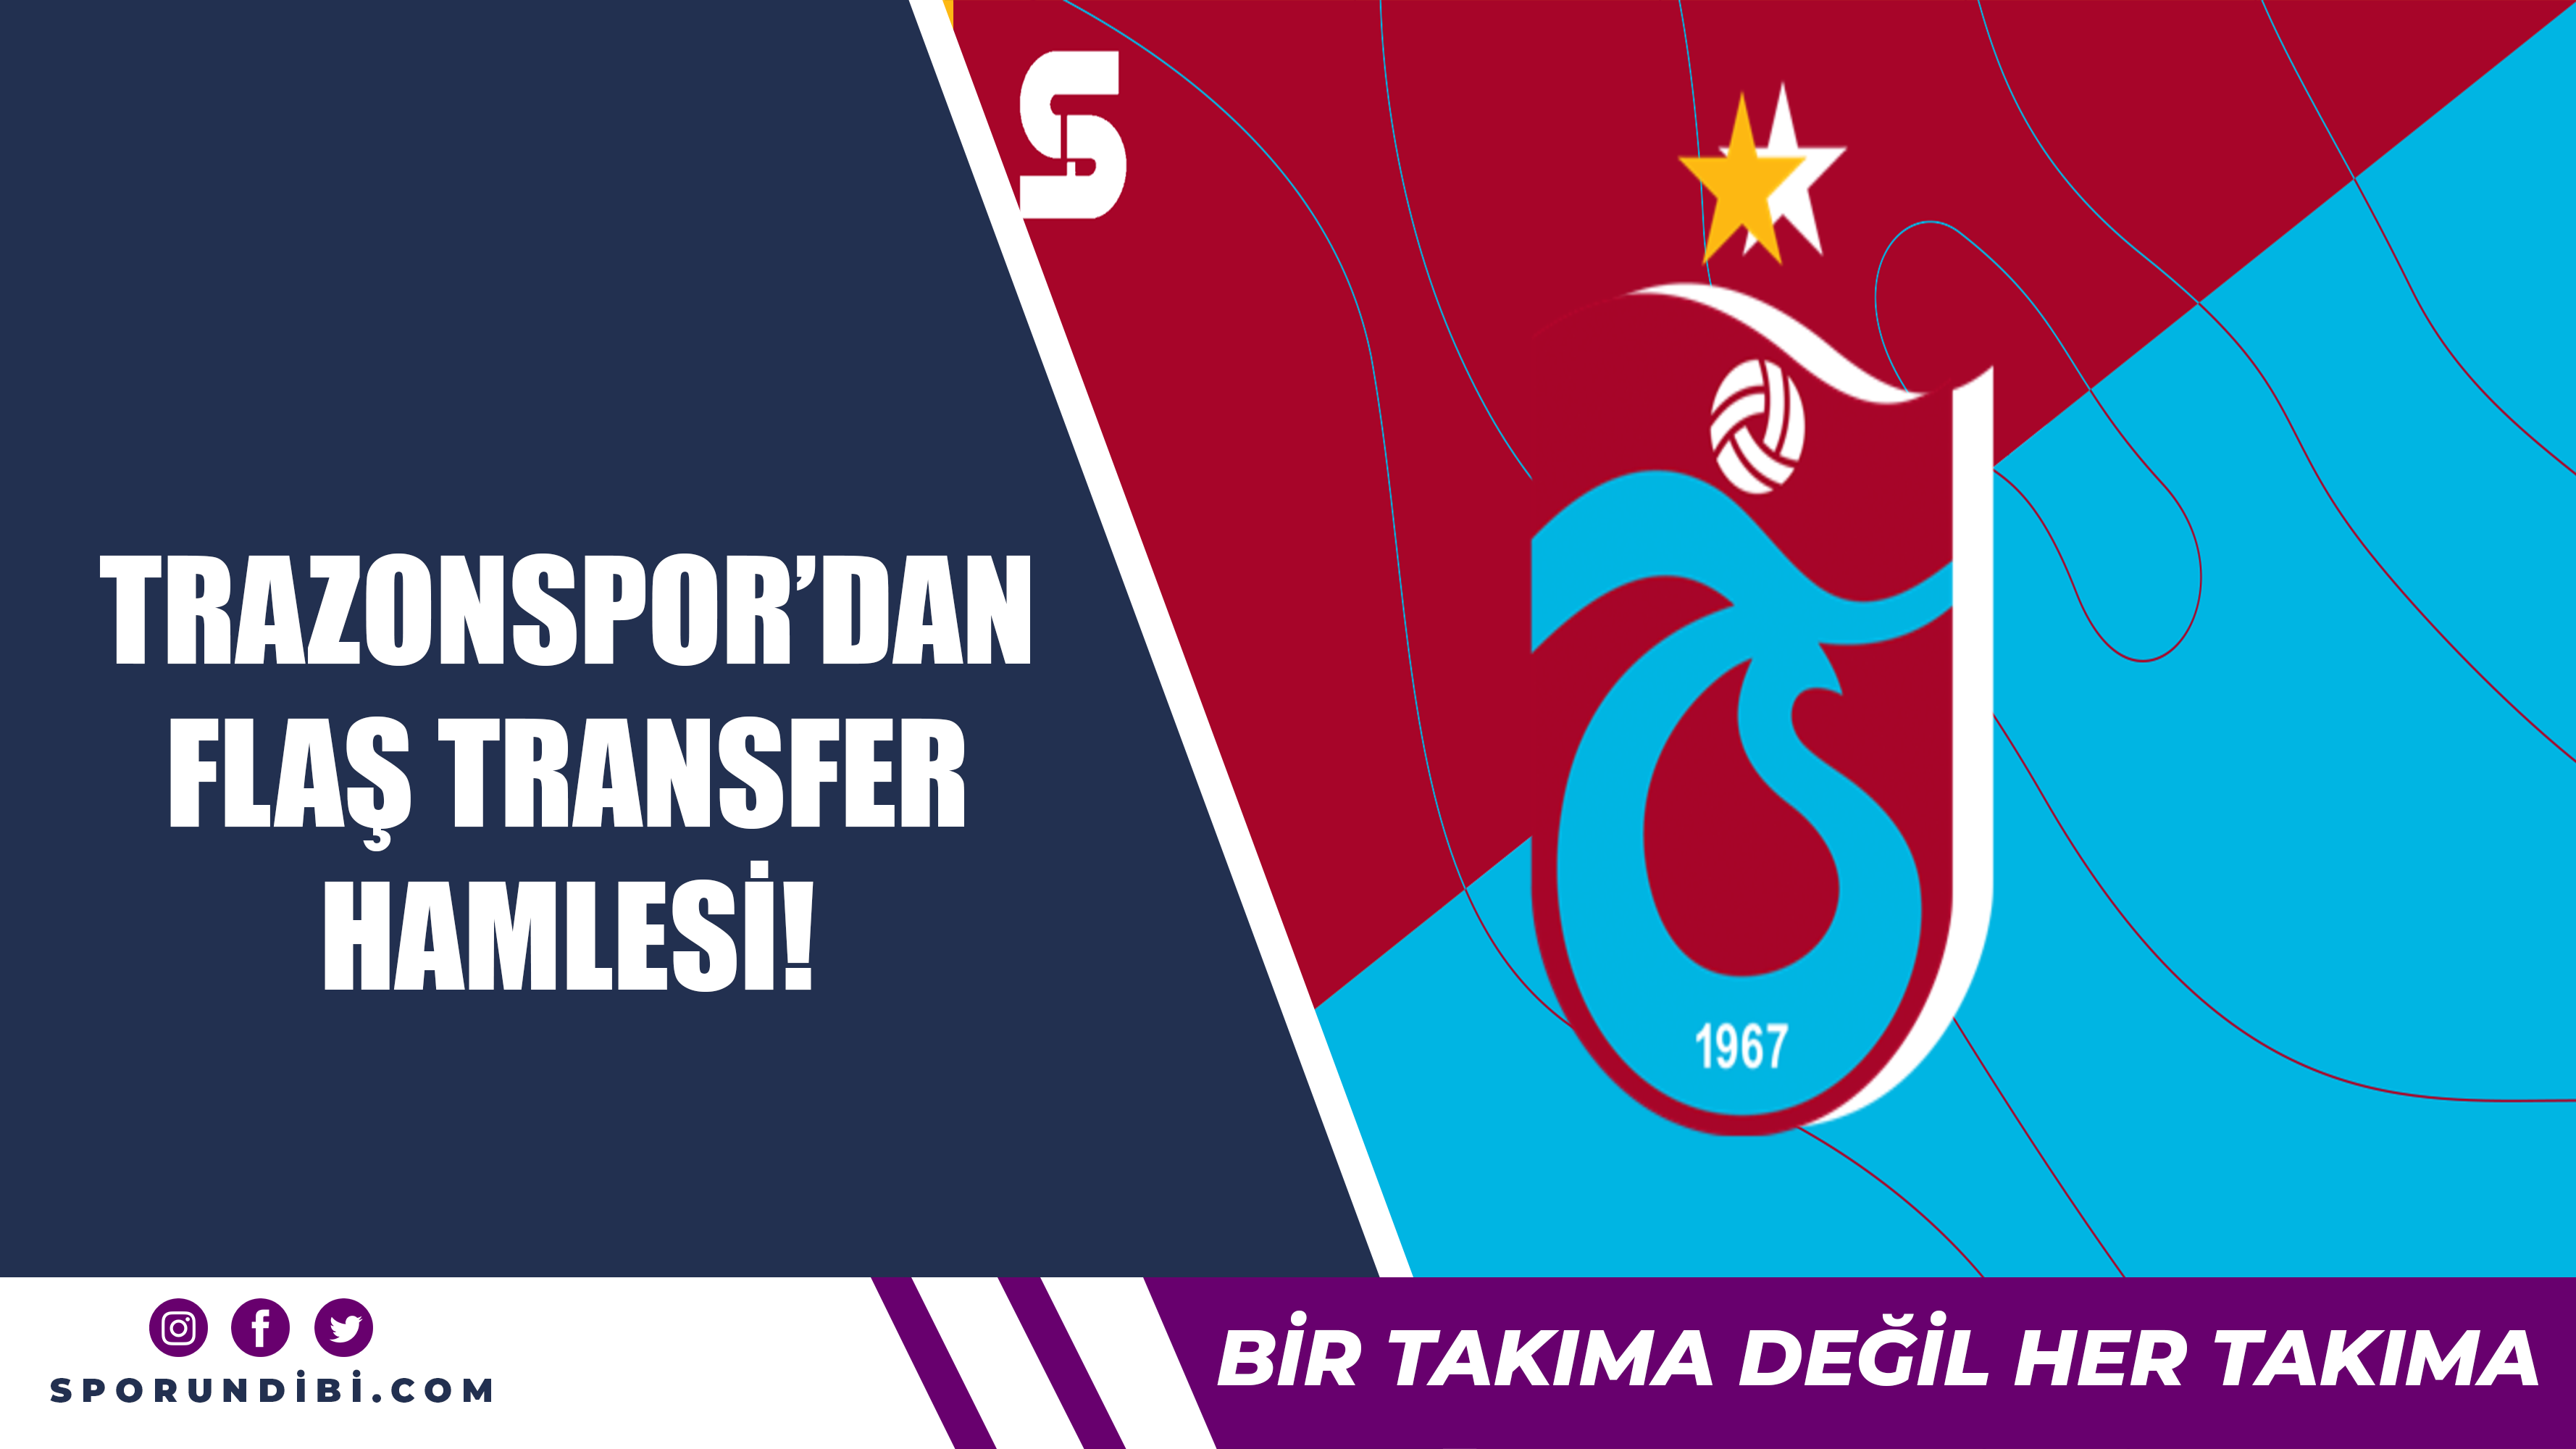 Trabzonspor'dan flaş transfer hamlesi!